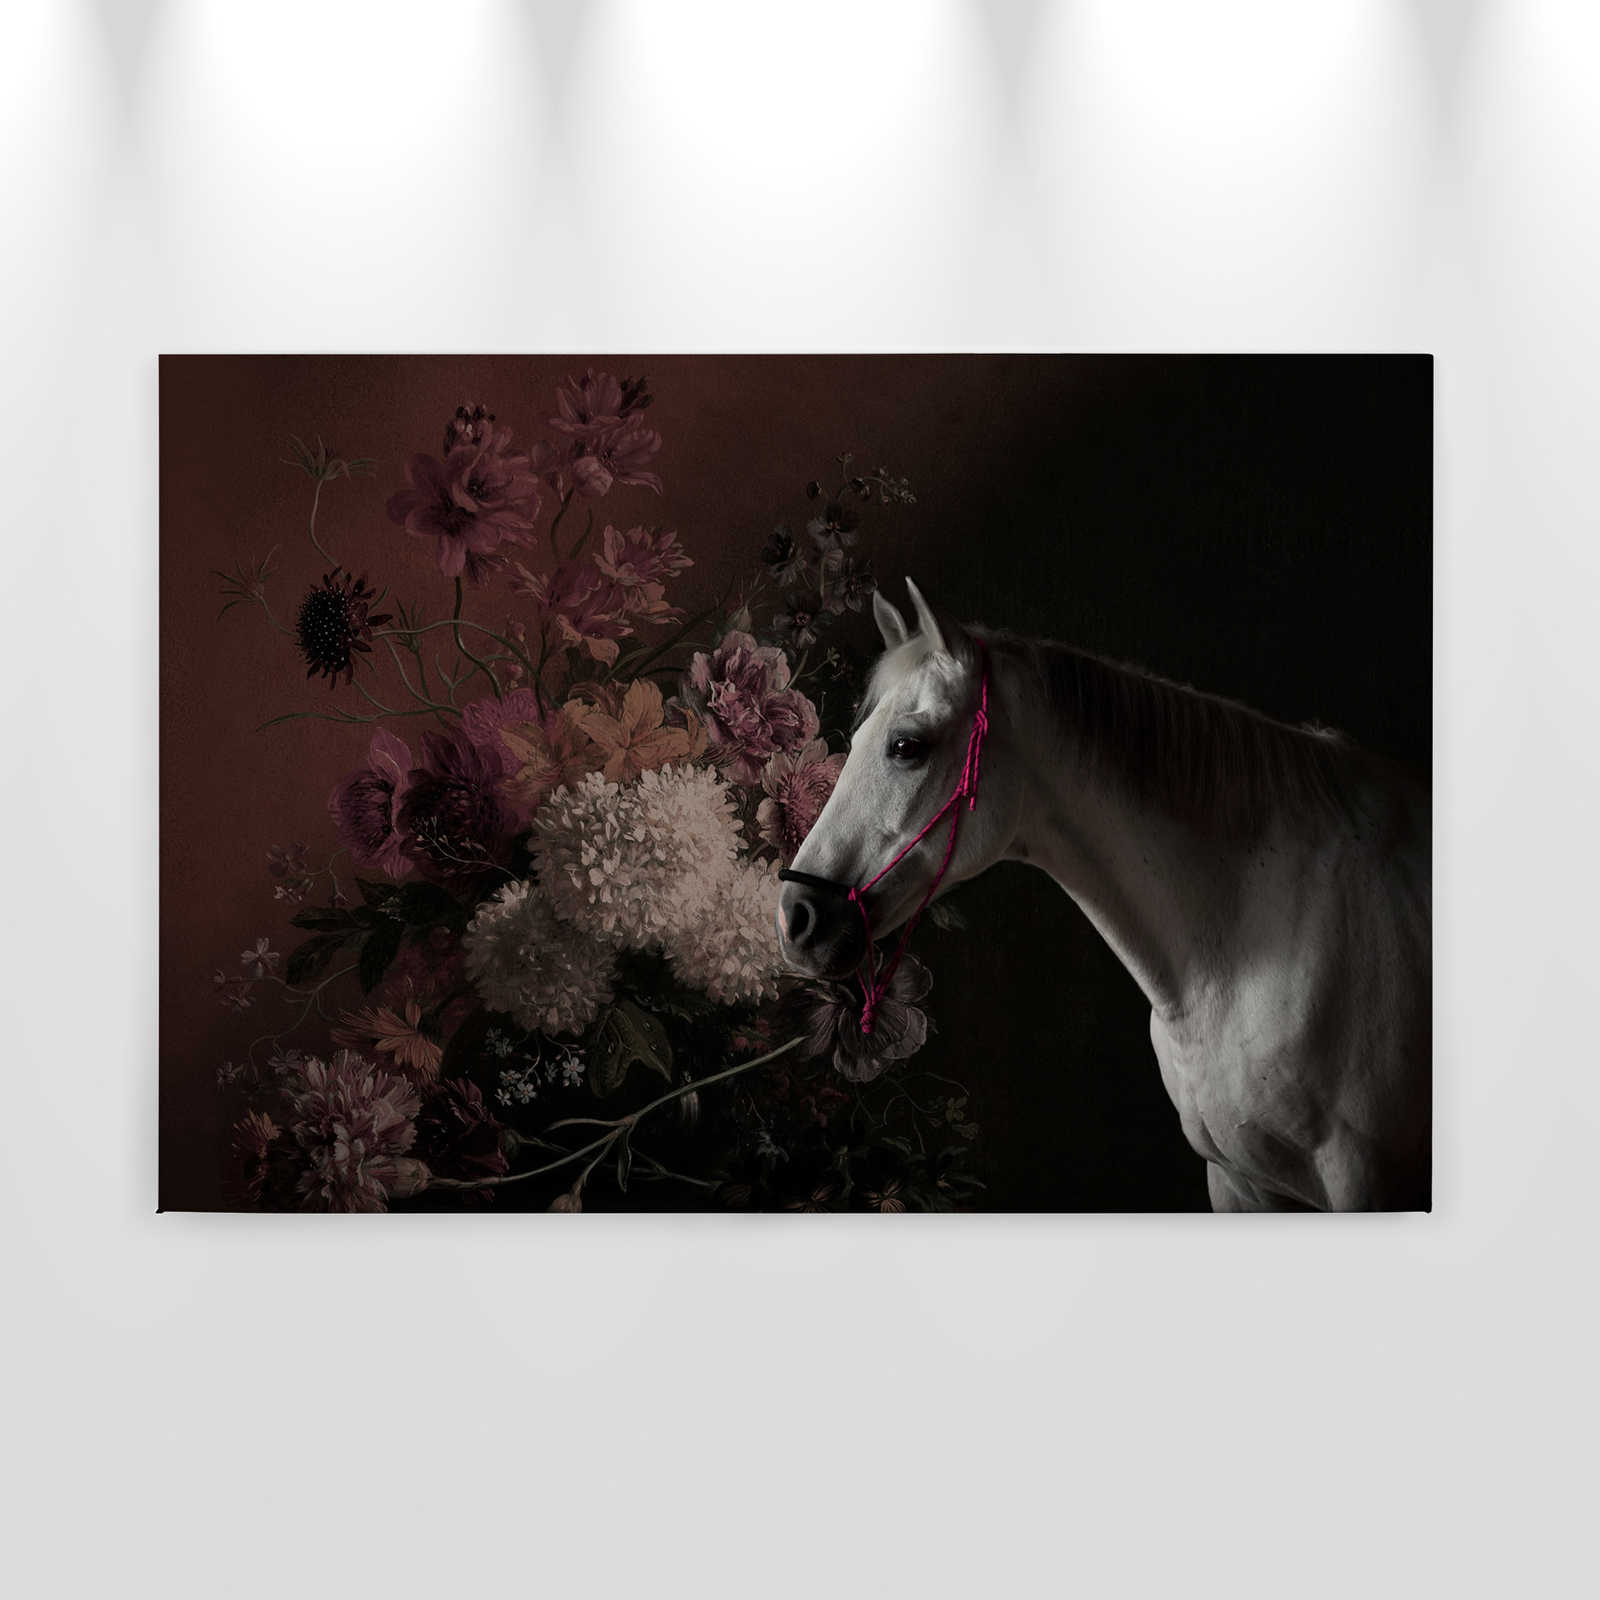             Cuadro en lienzo Retrato de caballo con flores - 0,90 m x 0,60 m
        